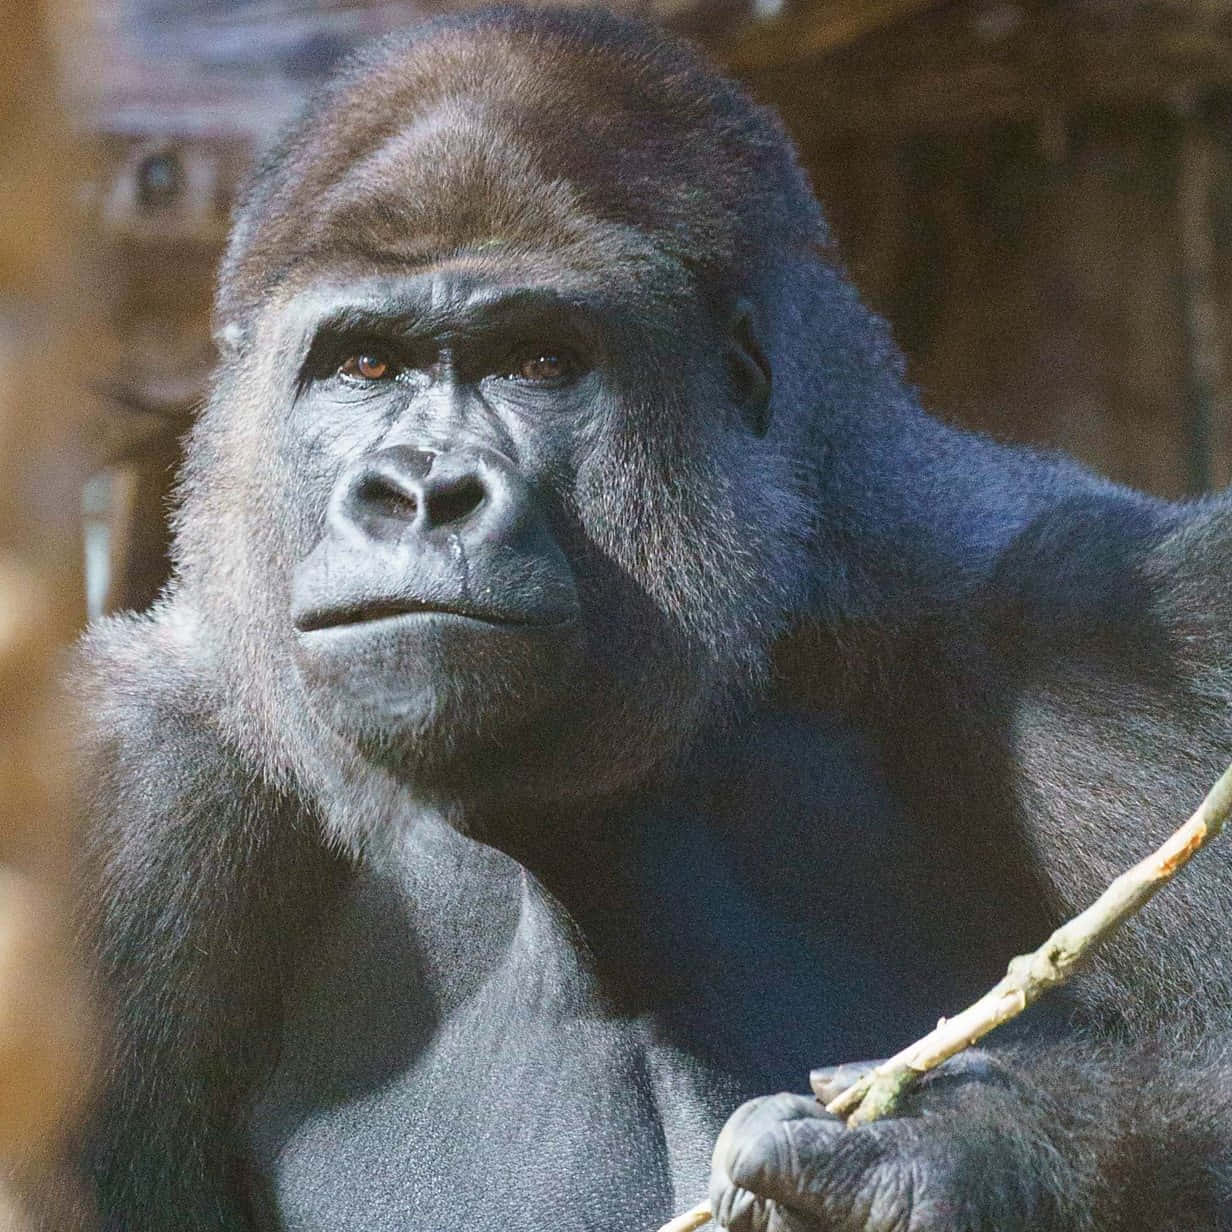 Ettæt Billede Af En Gorilla I Dens Naturlige Levested.